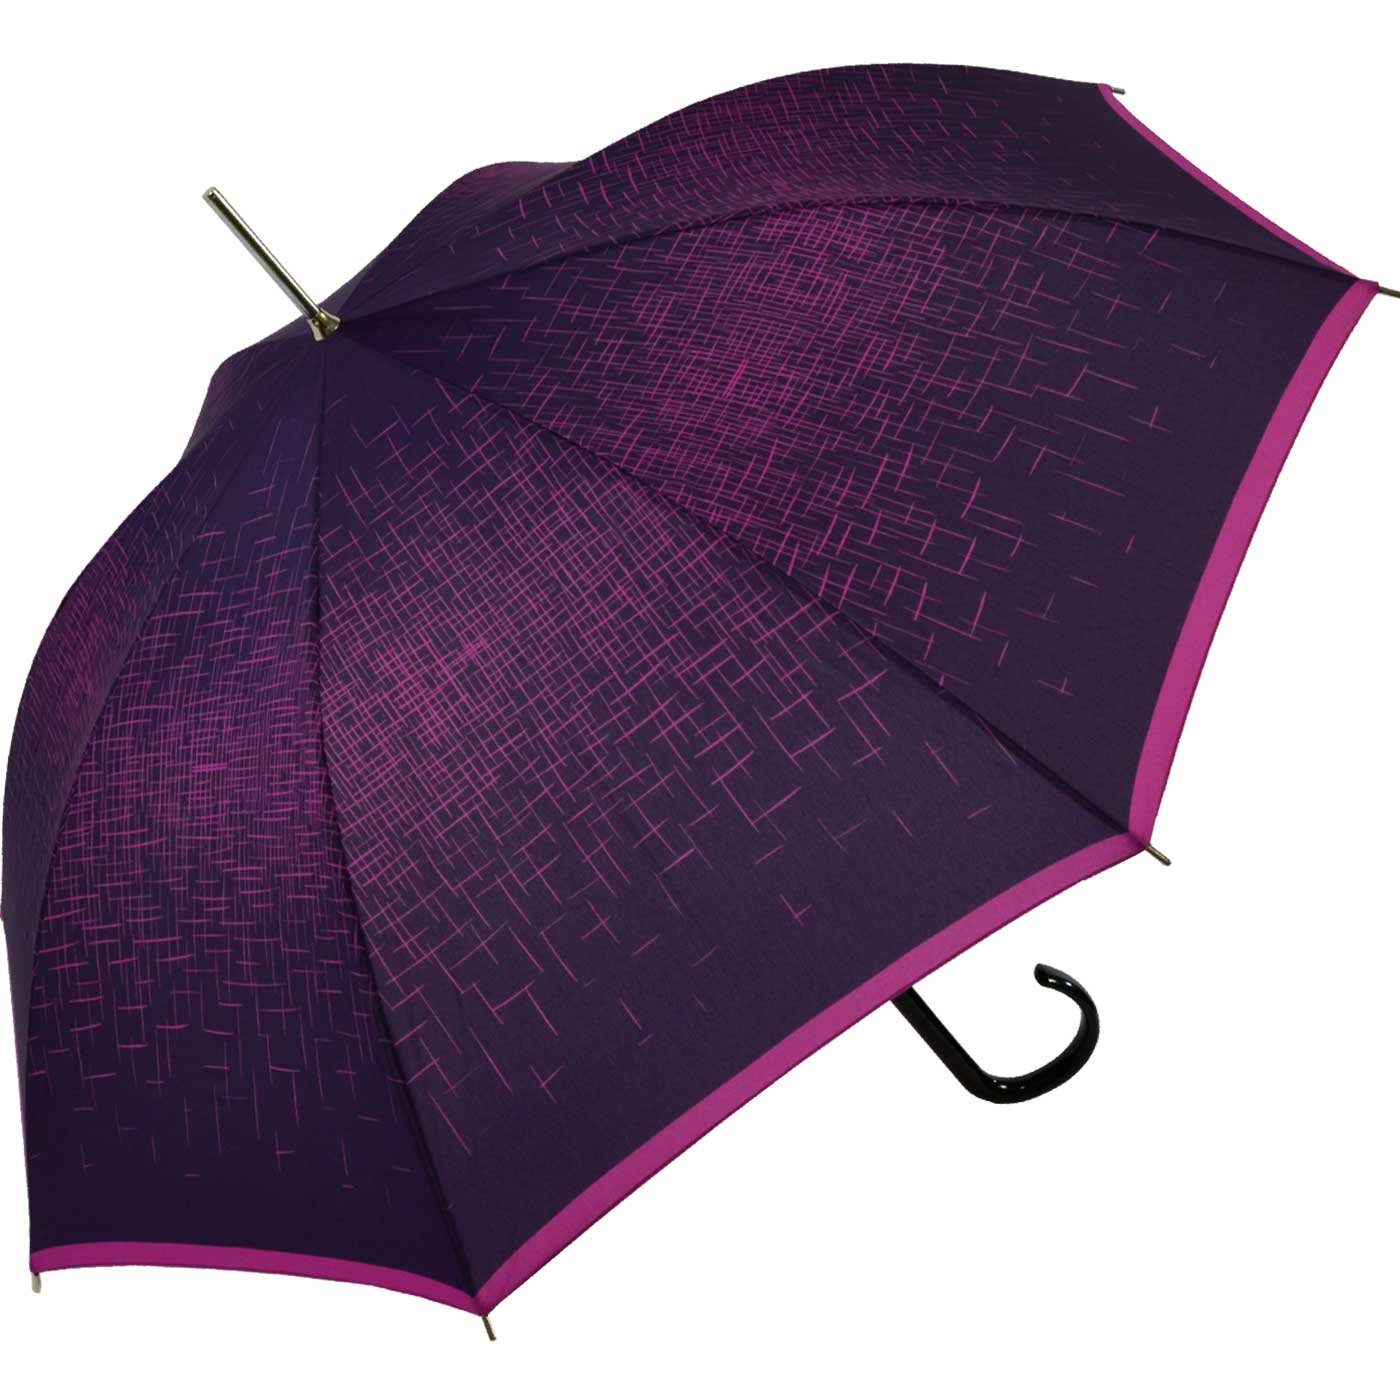 doppler® Langregenschirm extravagant bedruckter Damenschirm Schirm Auftritt für der Auf-Automatik, berry besondere den großen